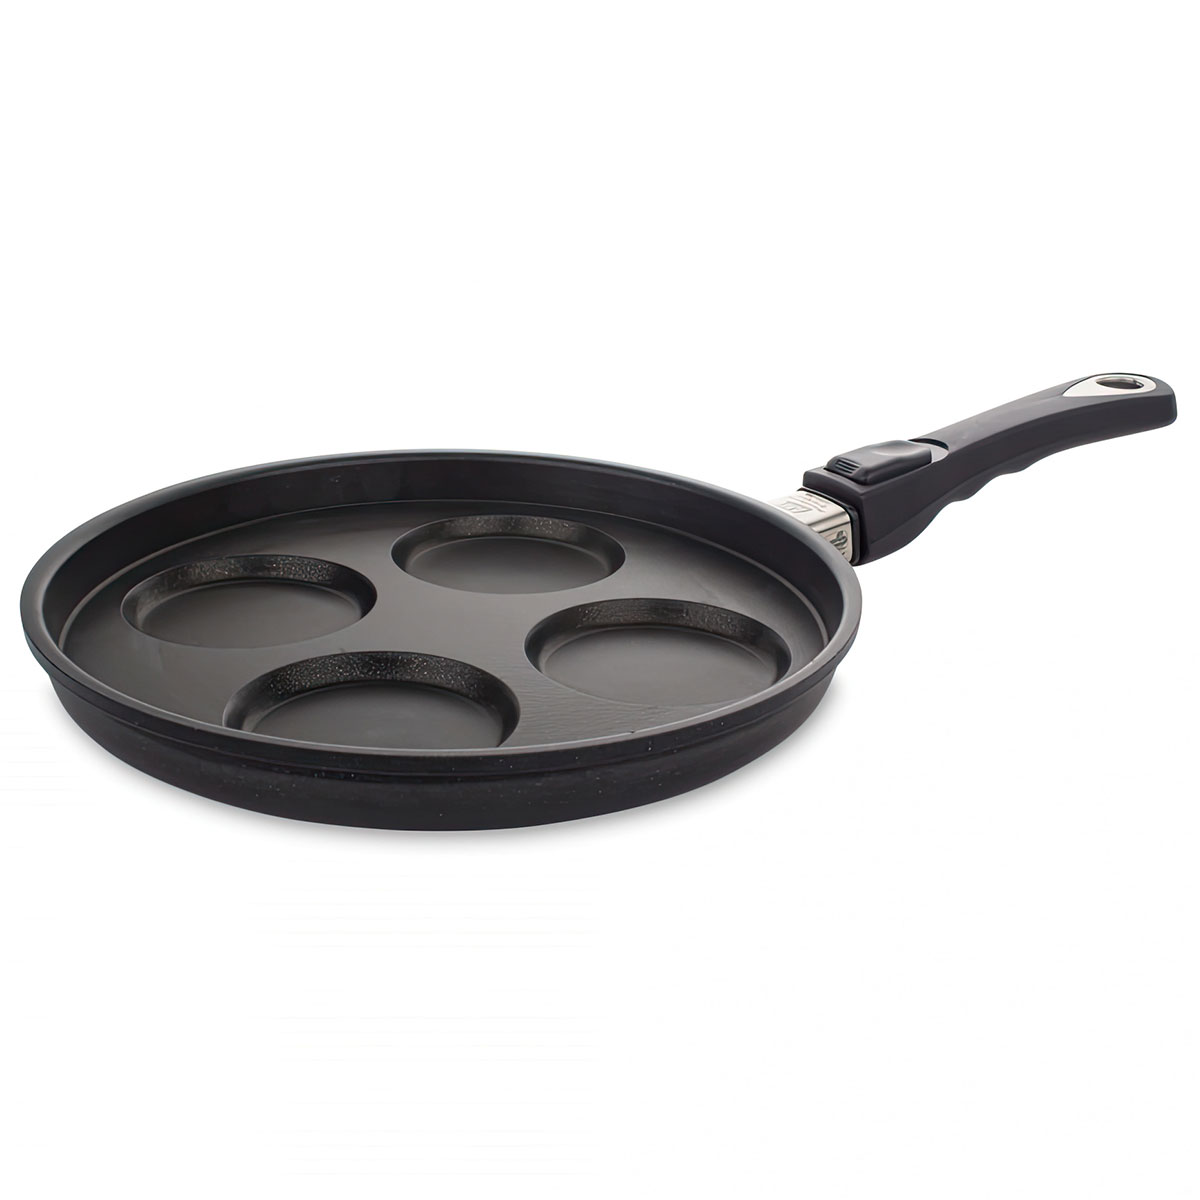 Сковорода для оладий AMT Frying Pans 26см, съемная ручка AMT AMT226, цвет черный - фото 1